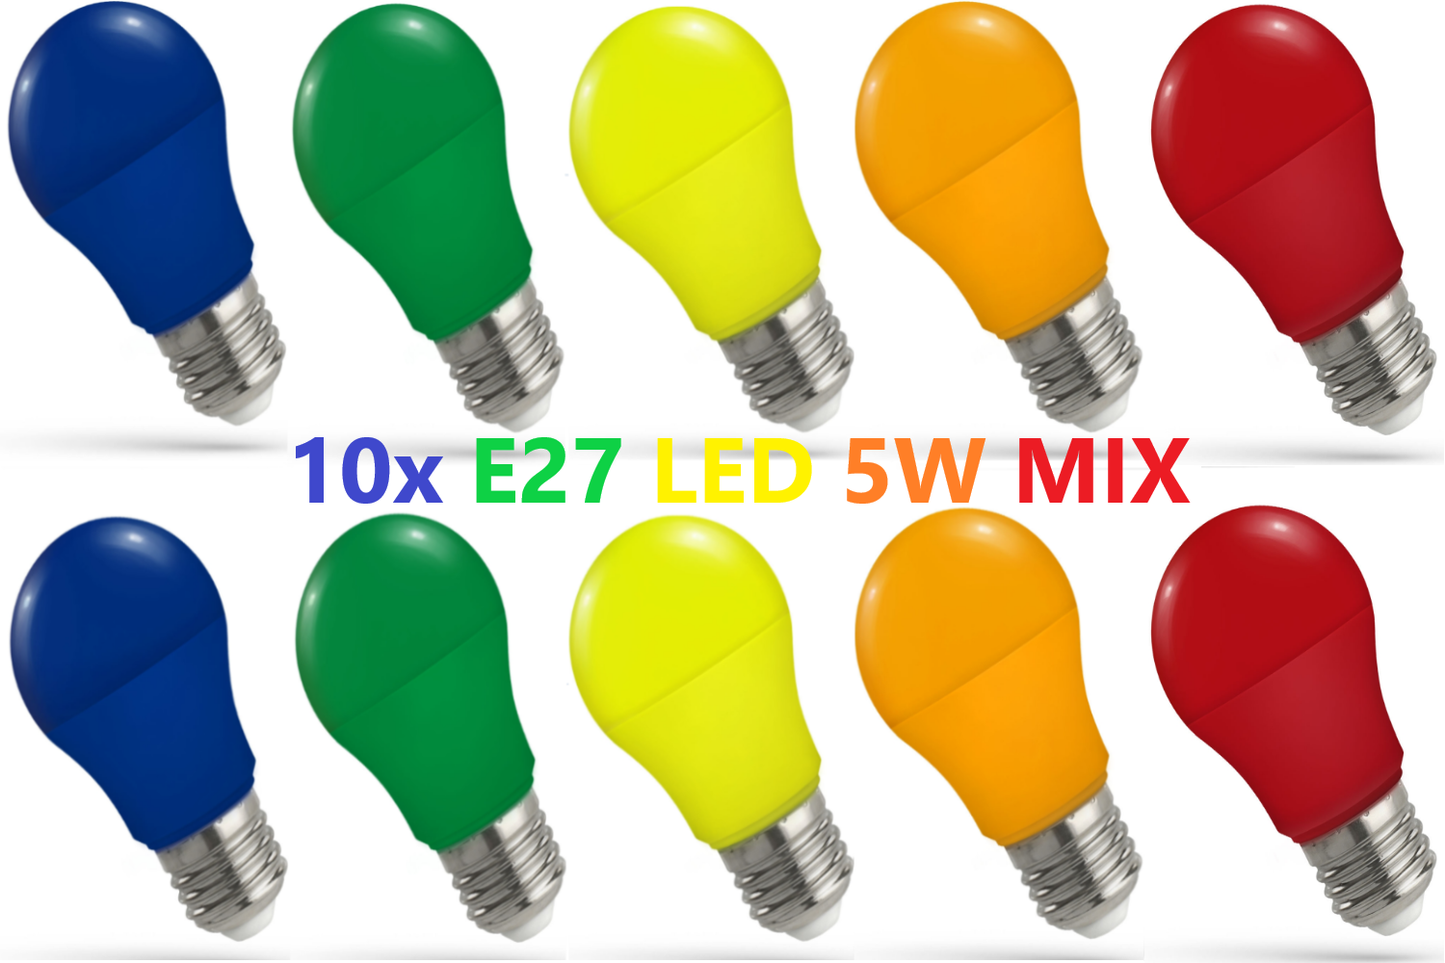 Spectrum 10er LED E27 A50 Farbig Bunt 4.9W = 40W Rot Blau Grün Gelb Orange 270° MIX